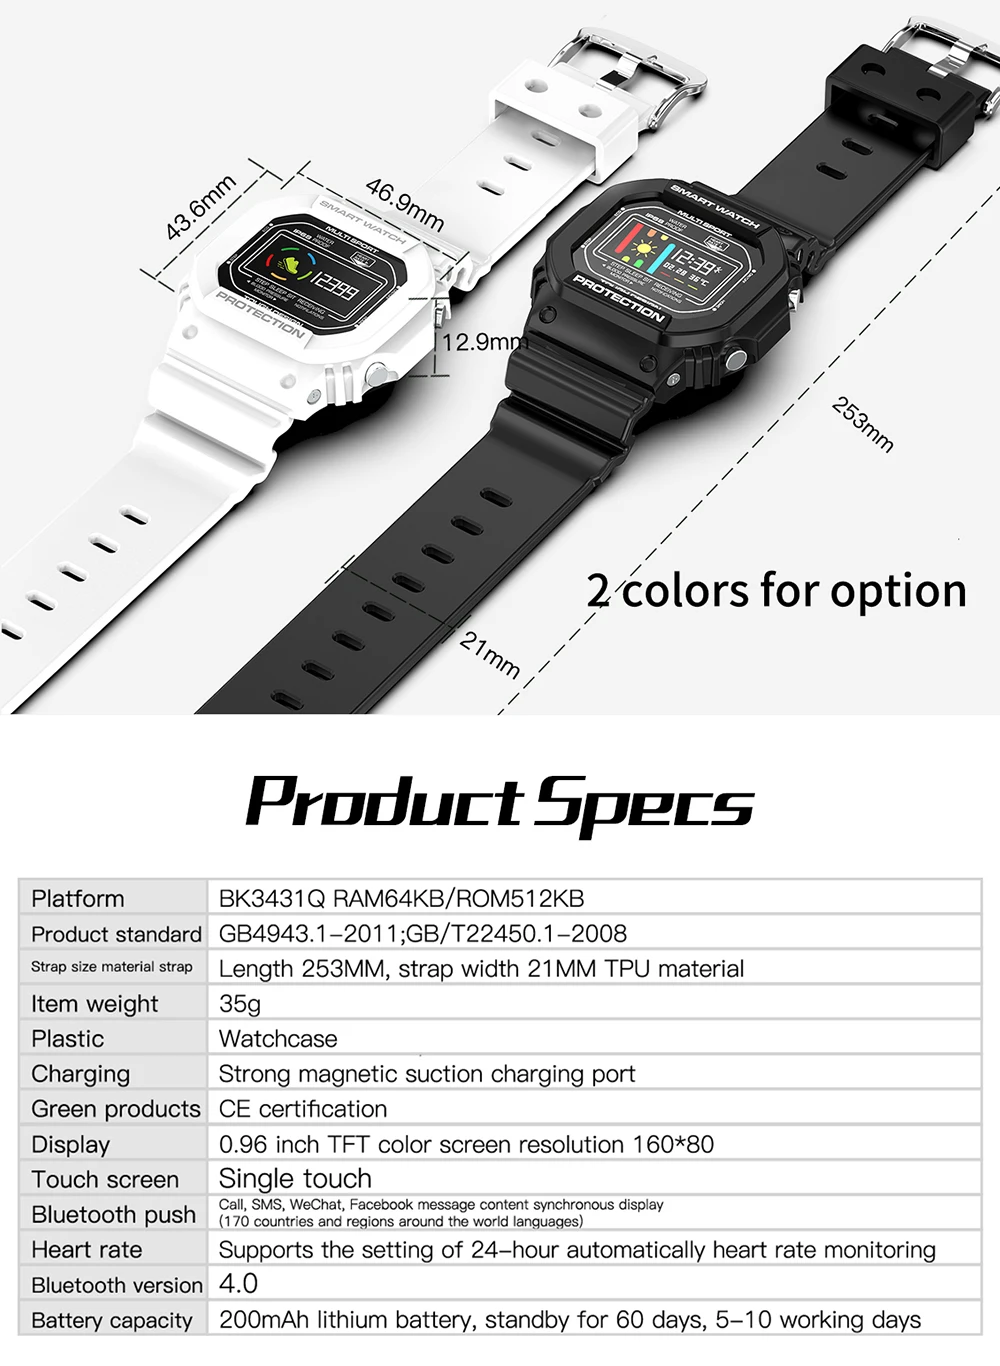 Роскошные мужские электронные умные часы с цветным экраном, смарт-браслет, модный бренд, часы для телефона, часы для погоды, умные часы для Android IOS